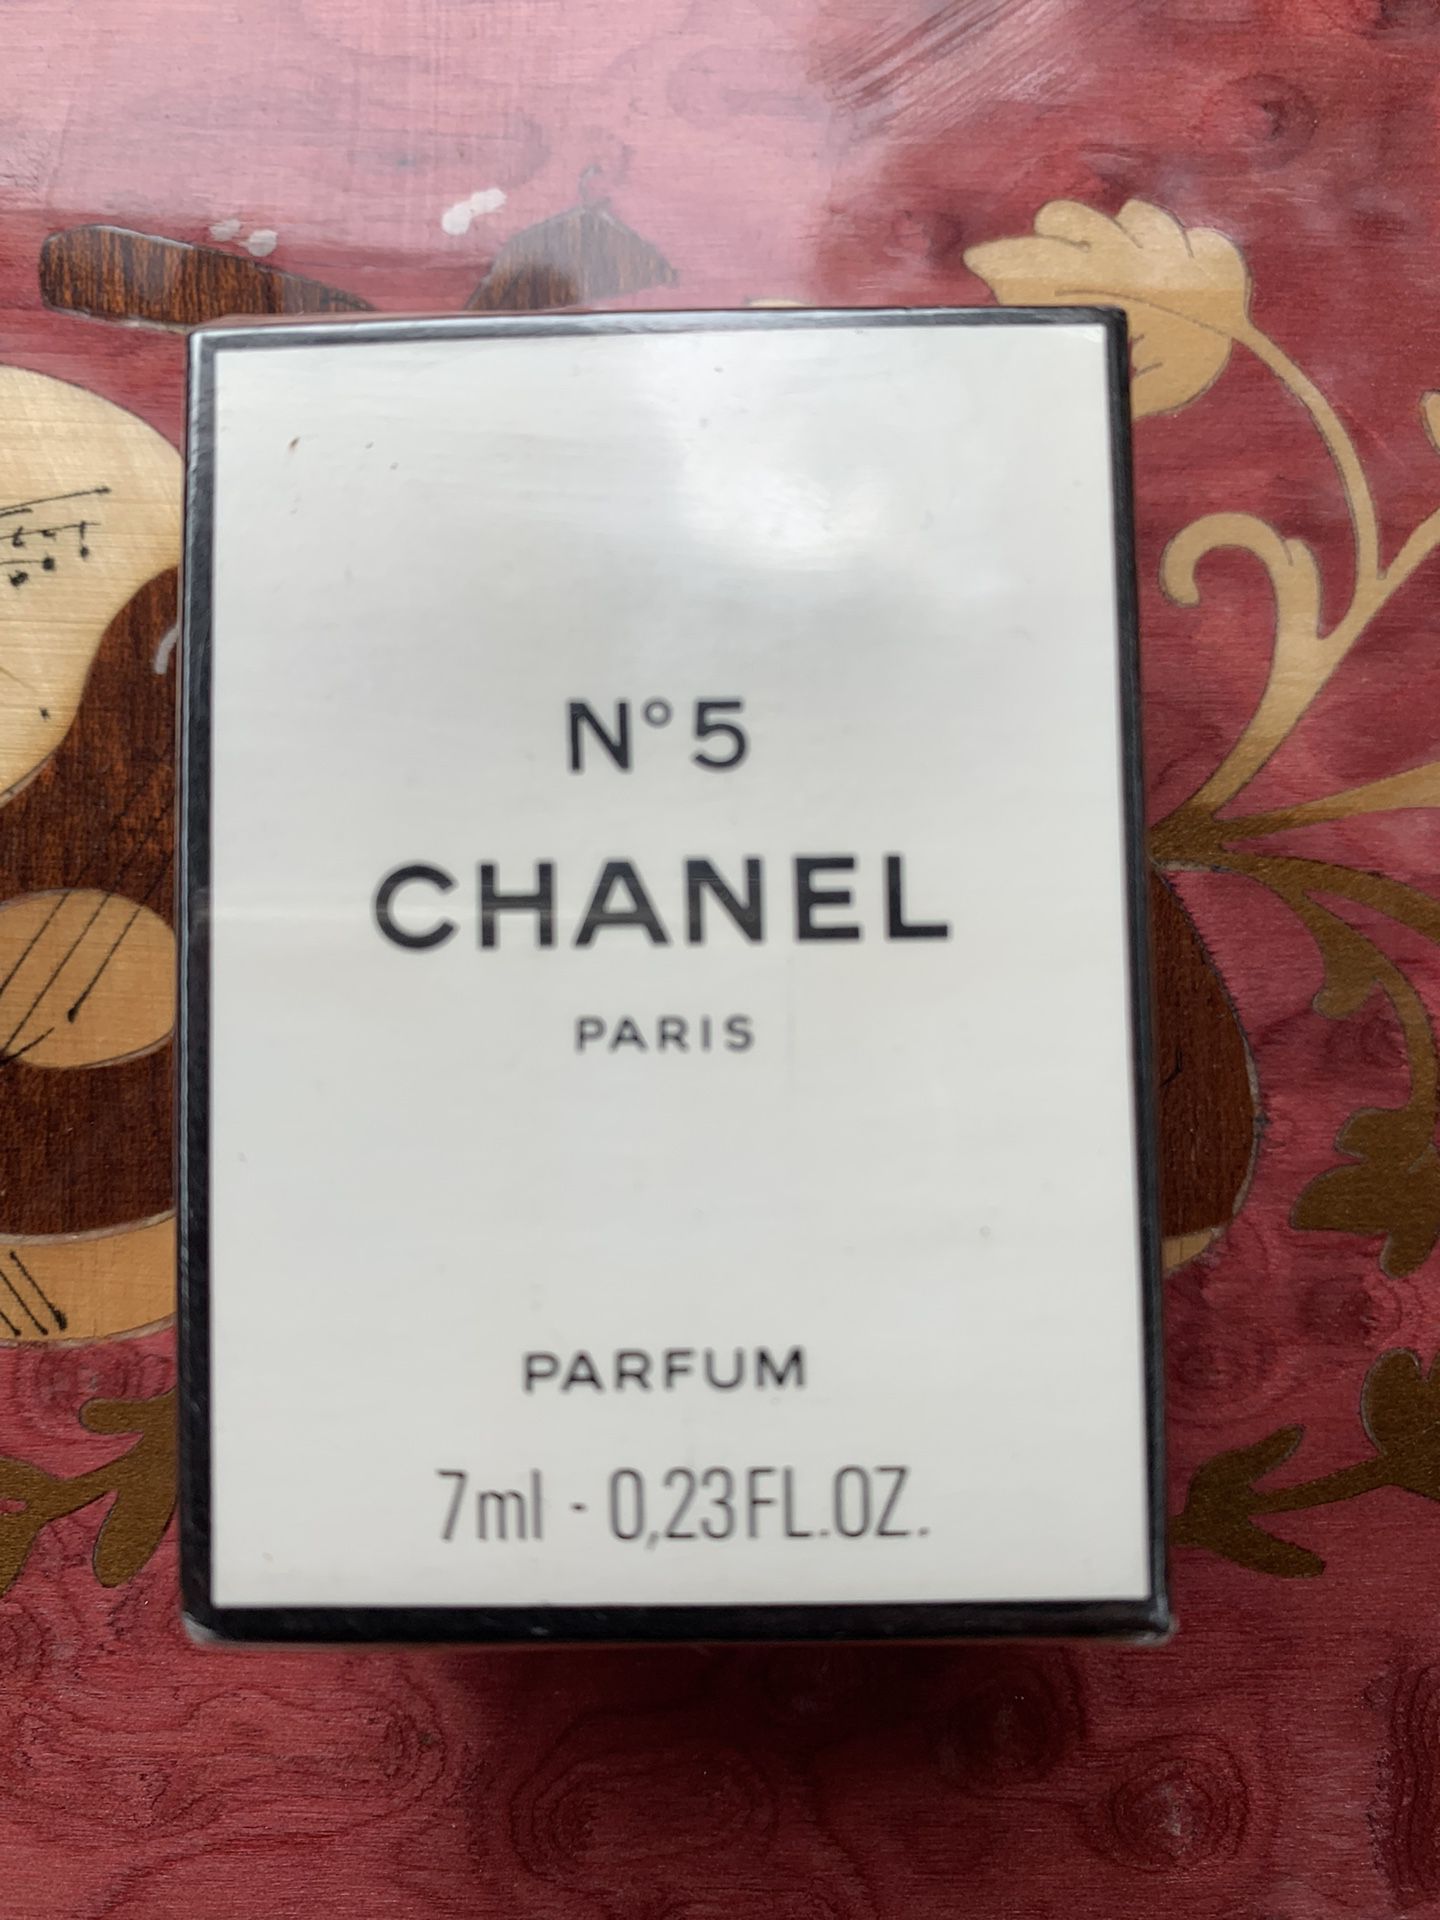 No 5 Chanel Perfum .23 fl oz 